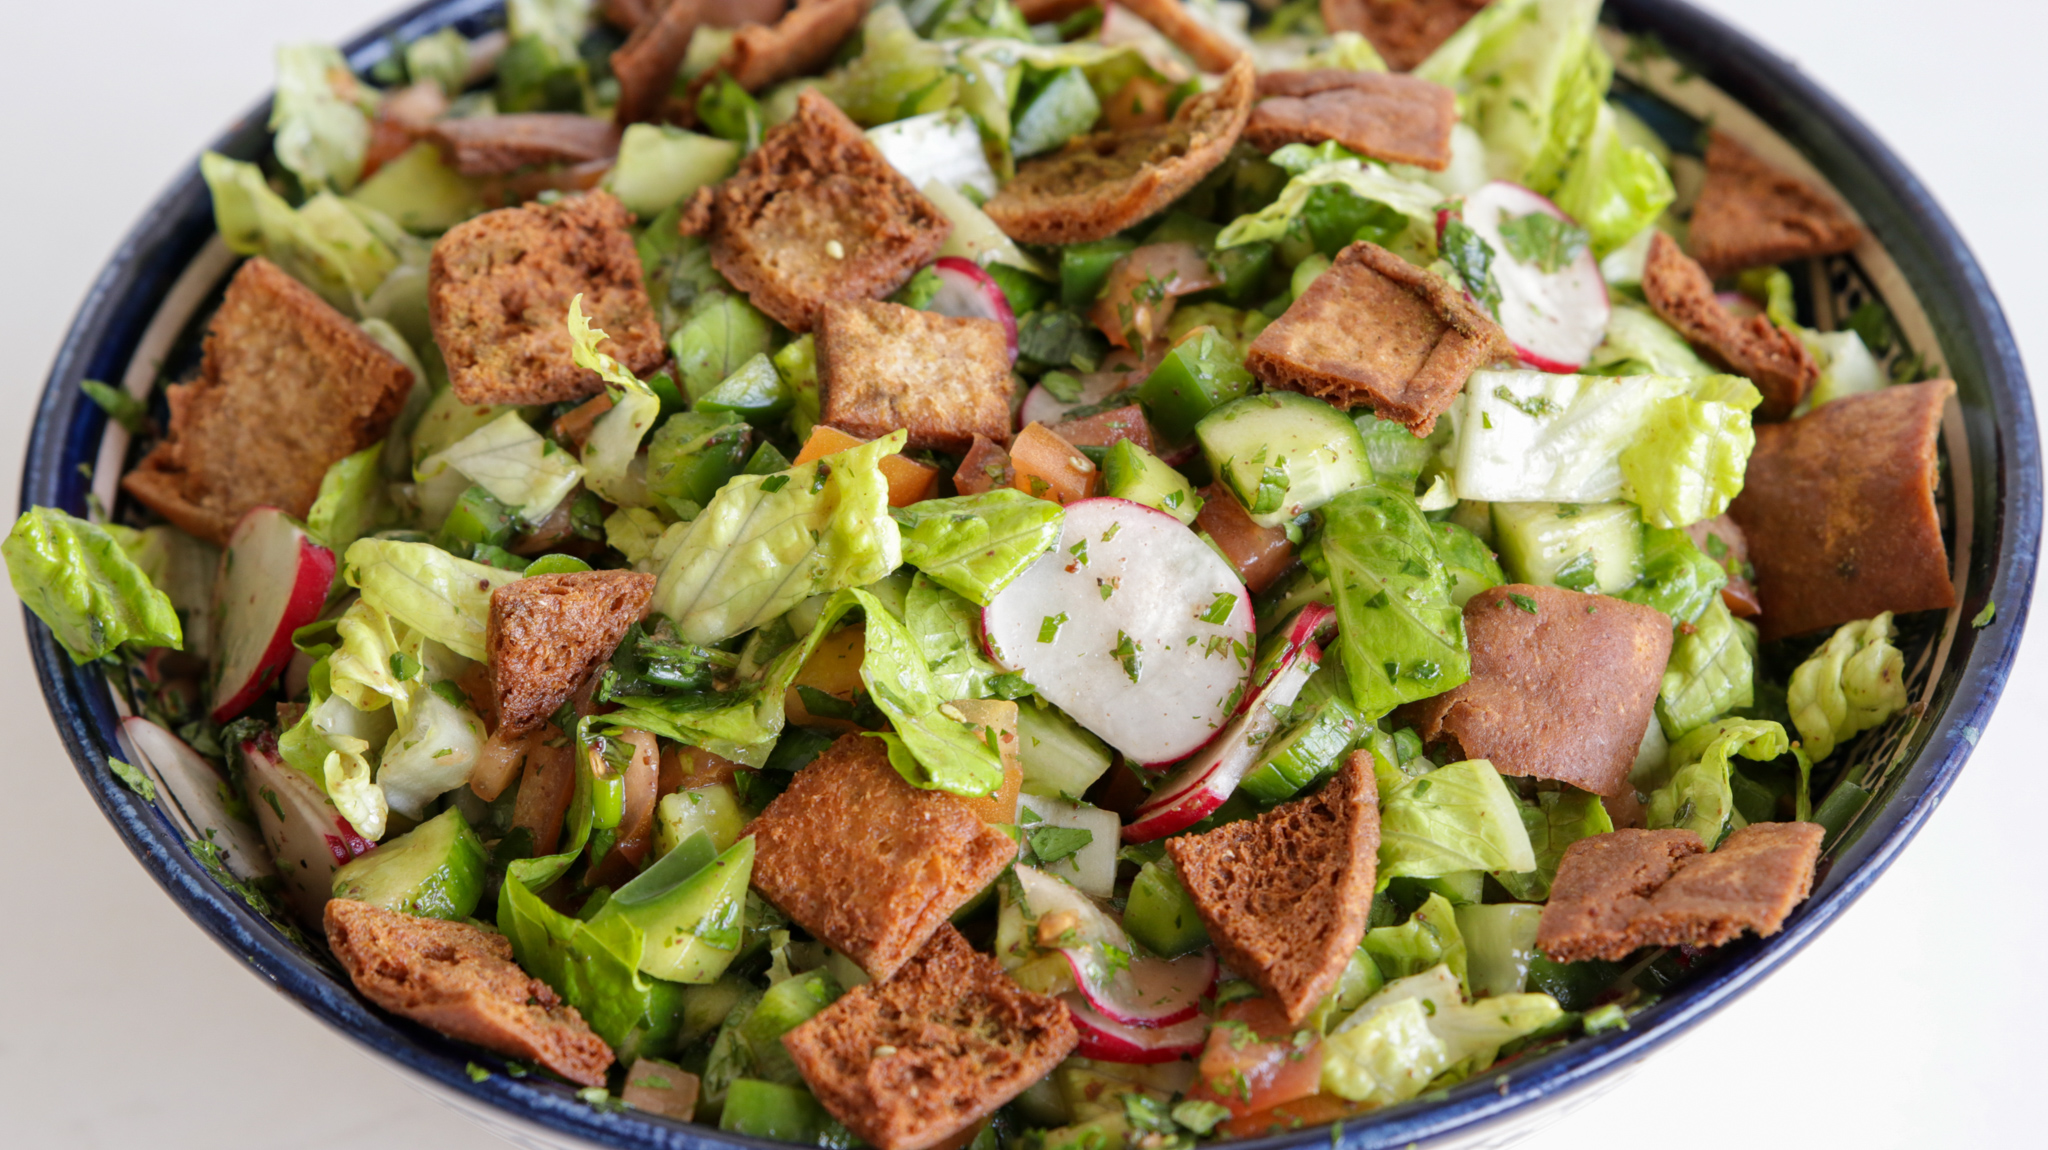 Classic Fattoush Salad Recipe